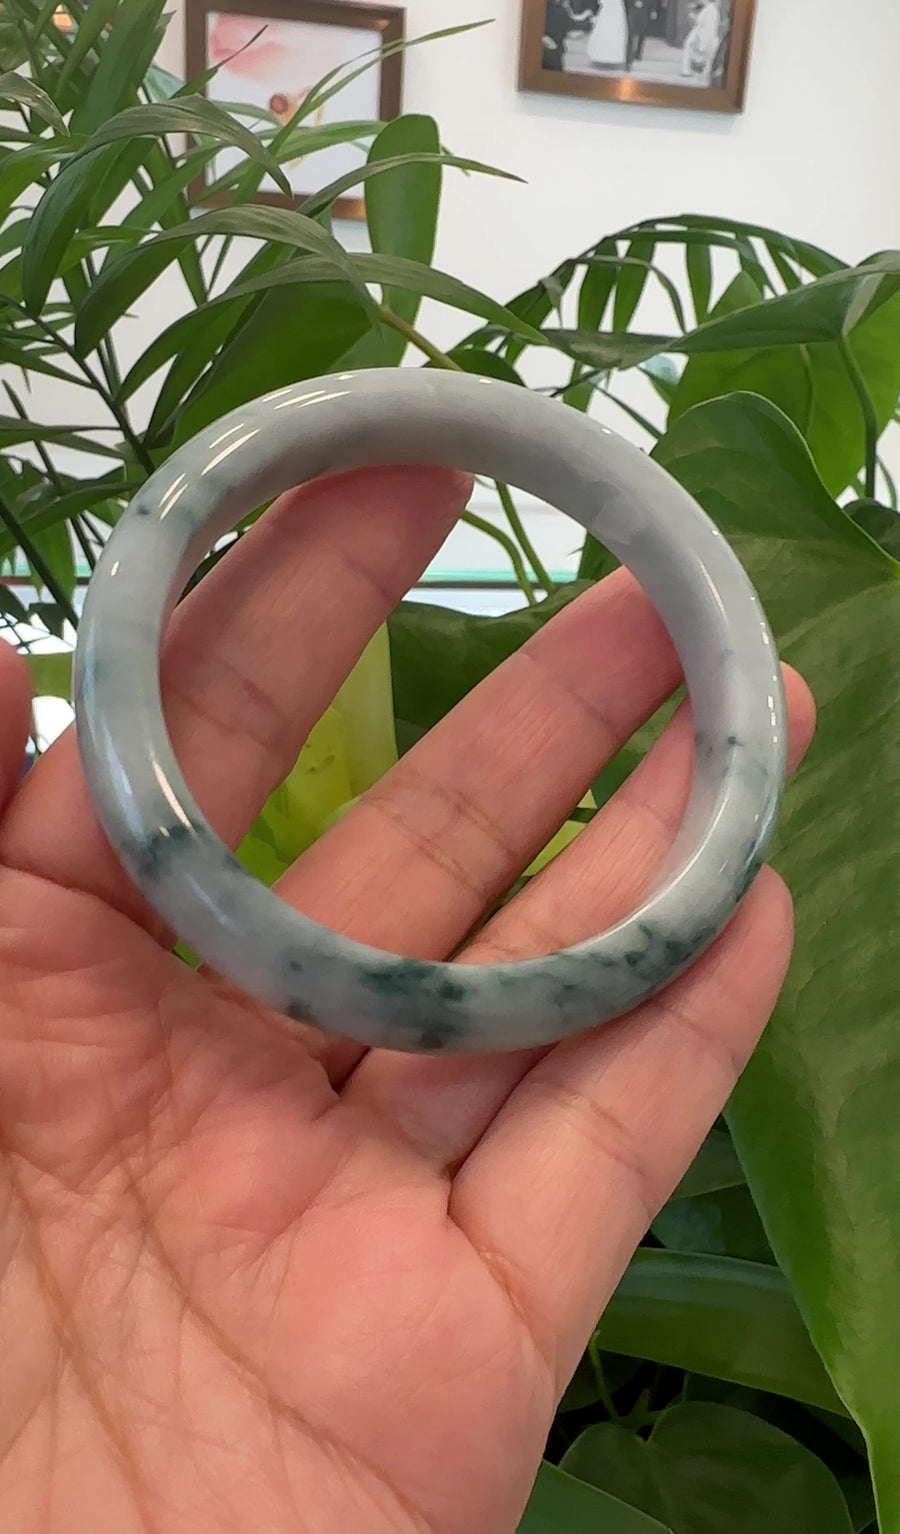 Natural Burmese Blue-green Jadeite Jade Bangle Bracelet (59.40mm)#T025